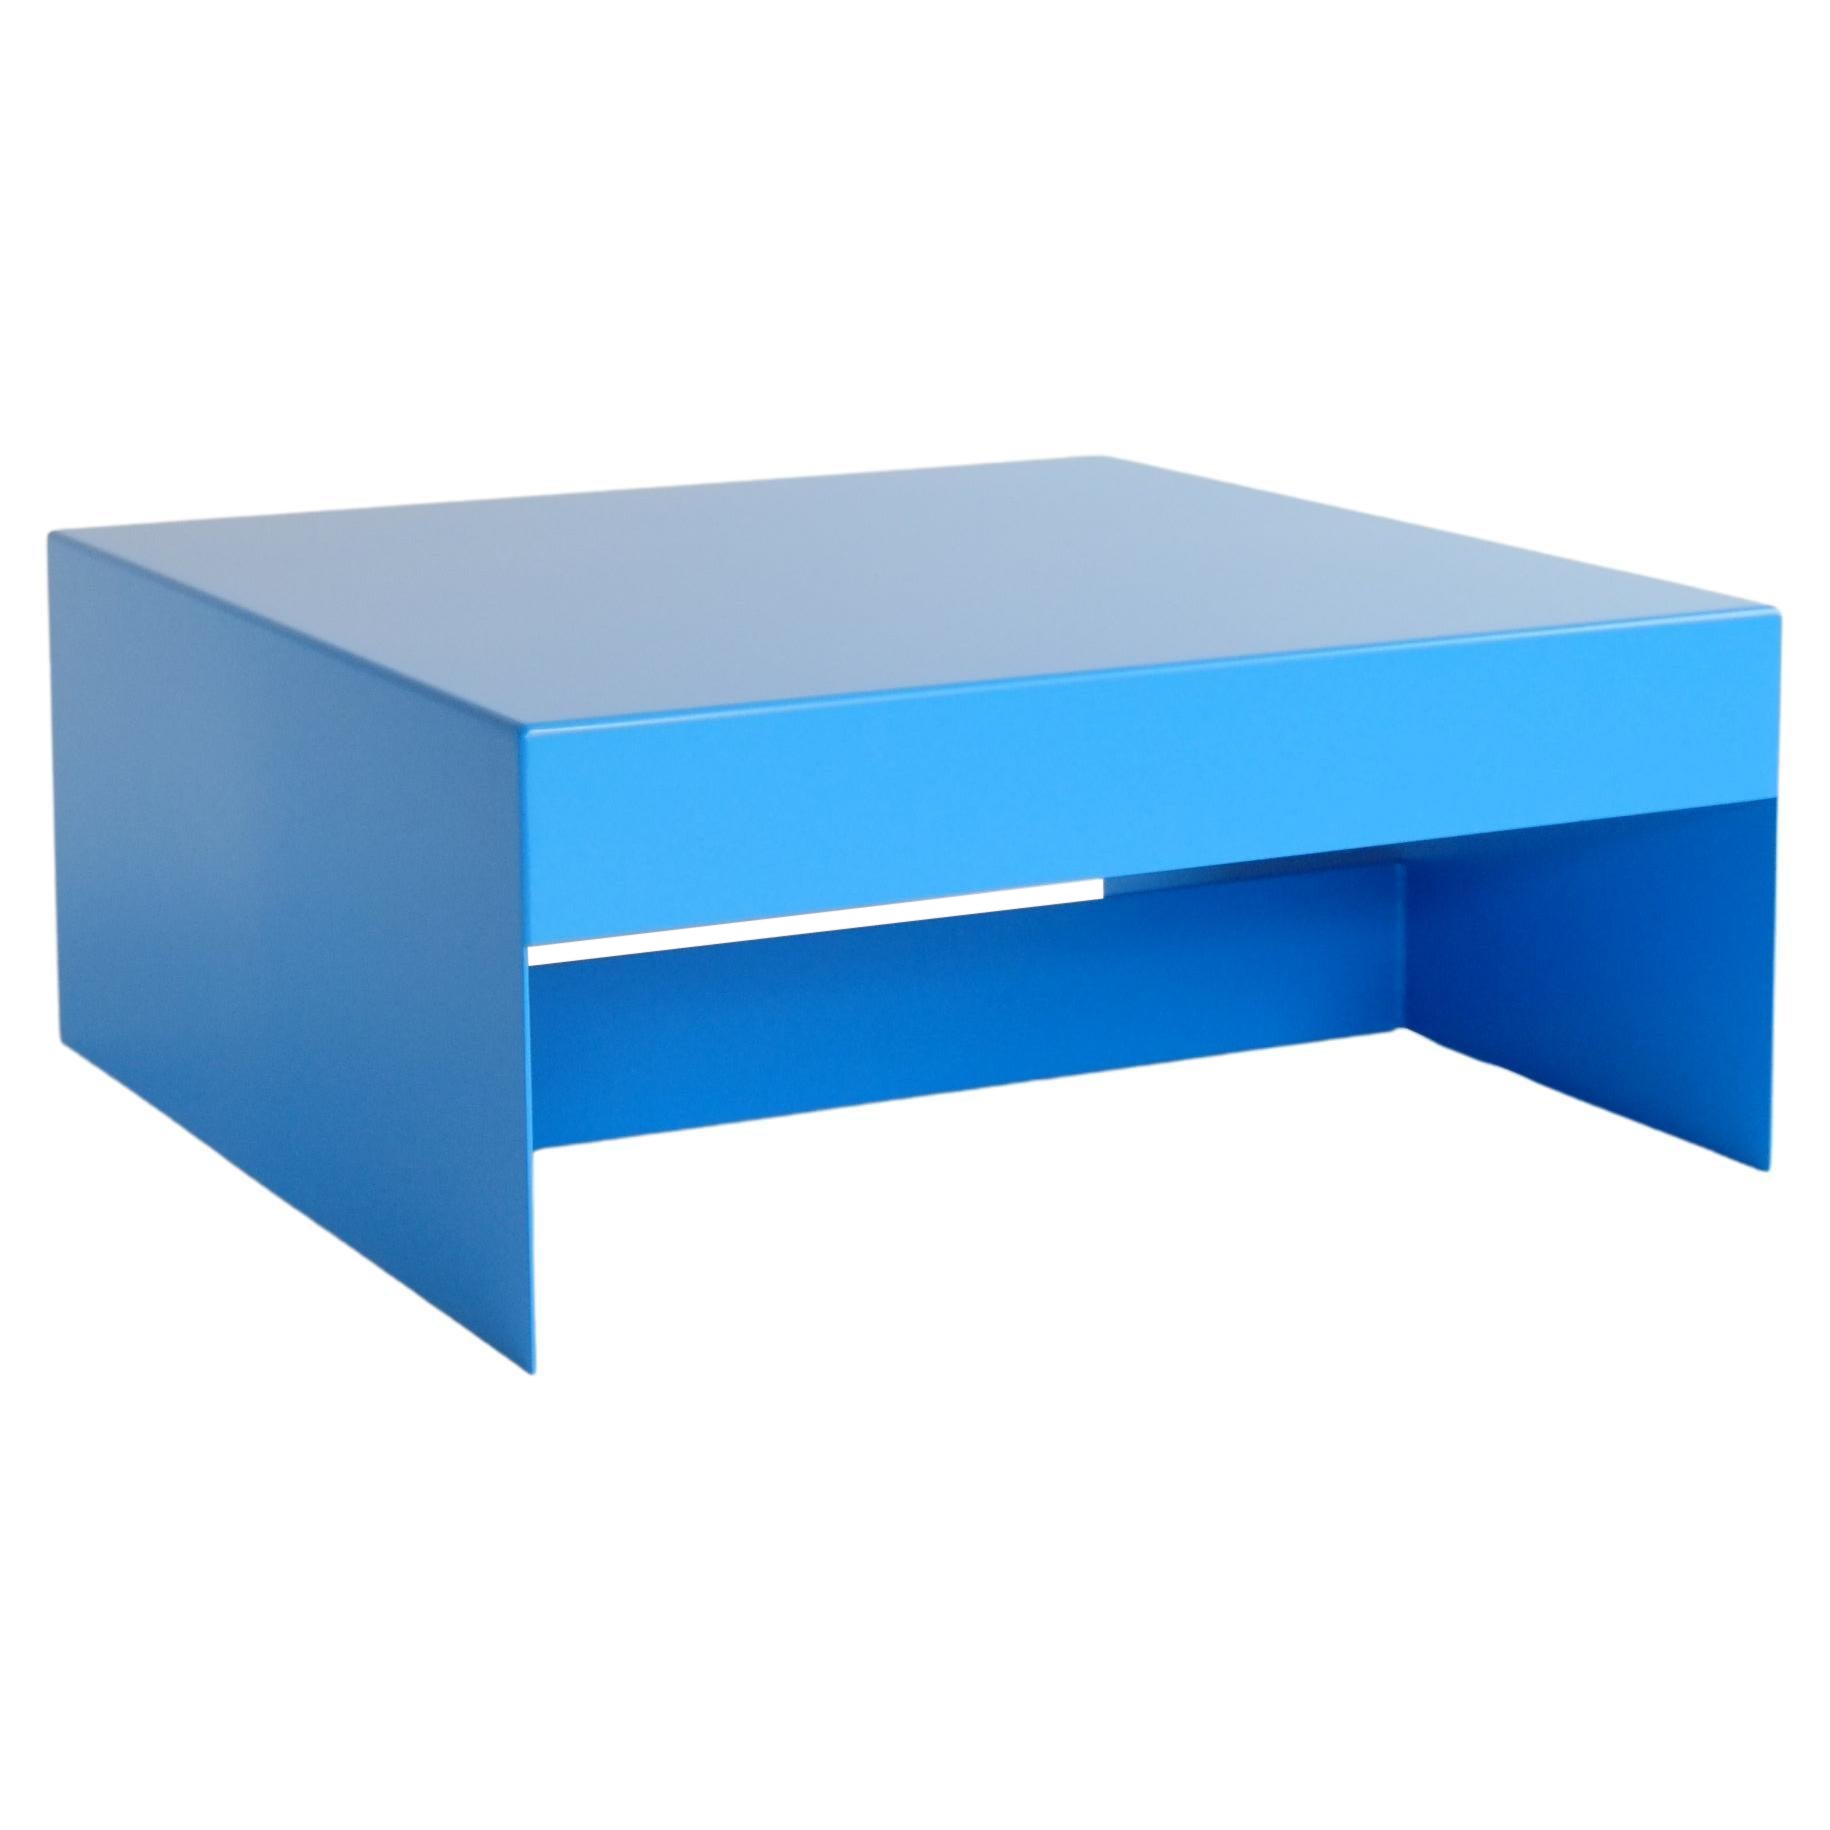 Blauer quadratischer Aluminium-Couchtisch für den Innen- und Außenbereich, individuell gestaltbar